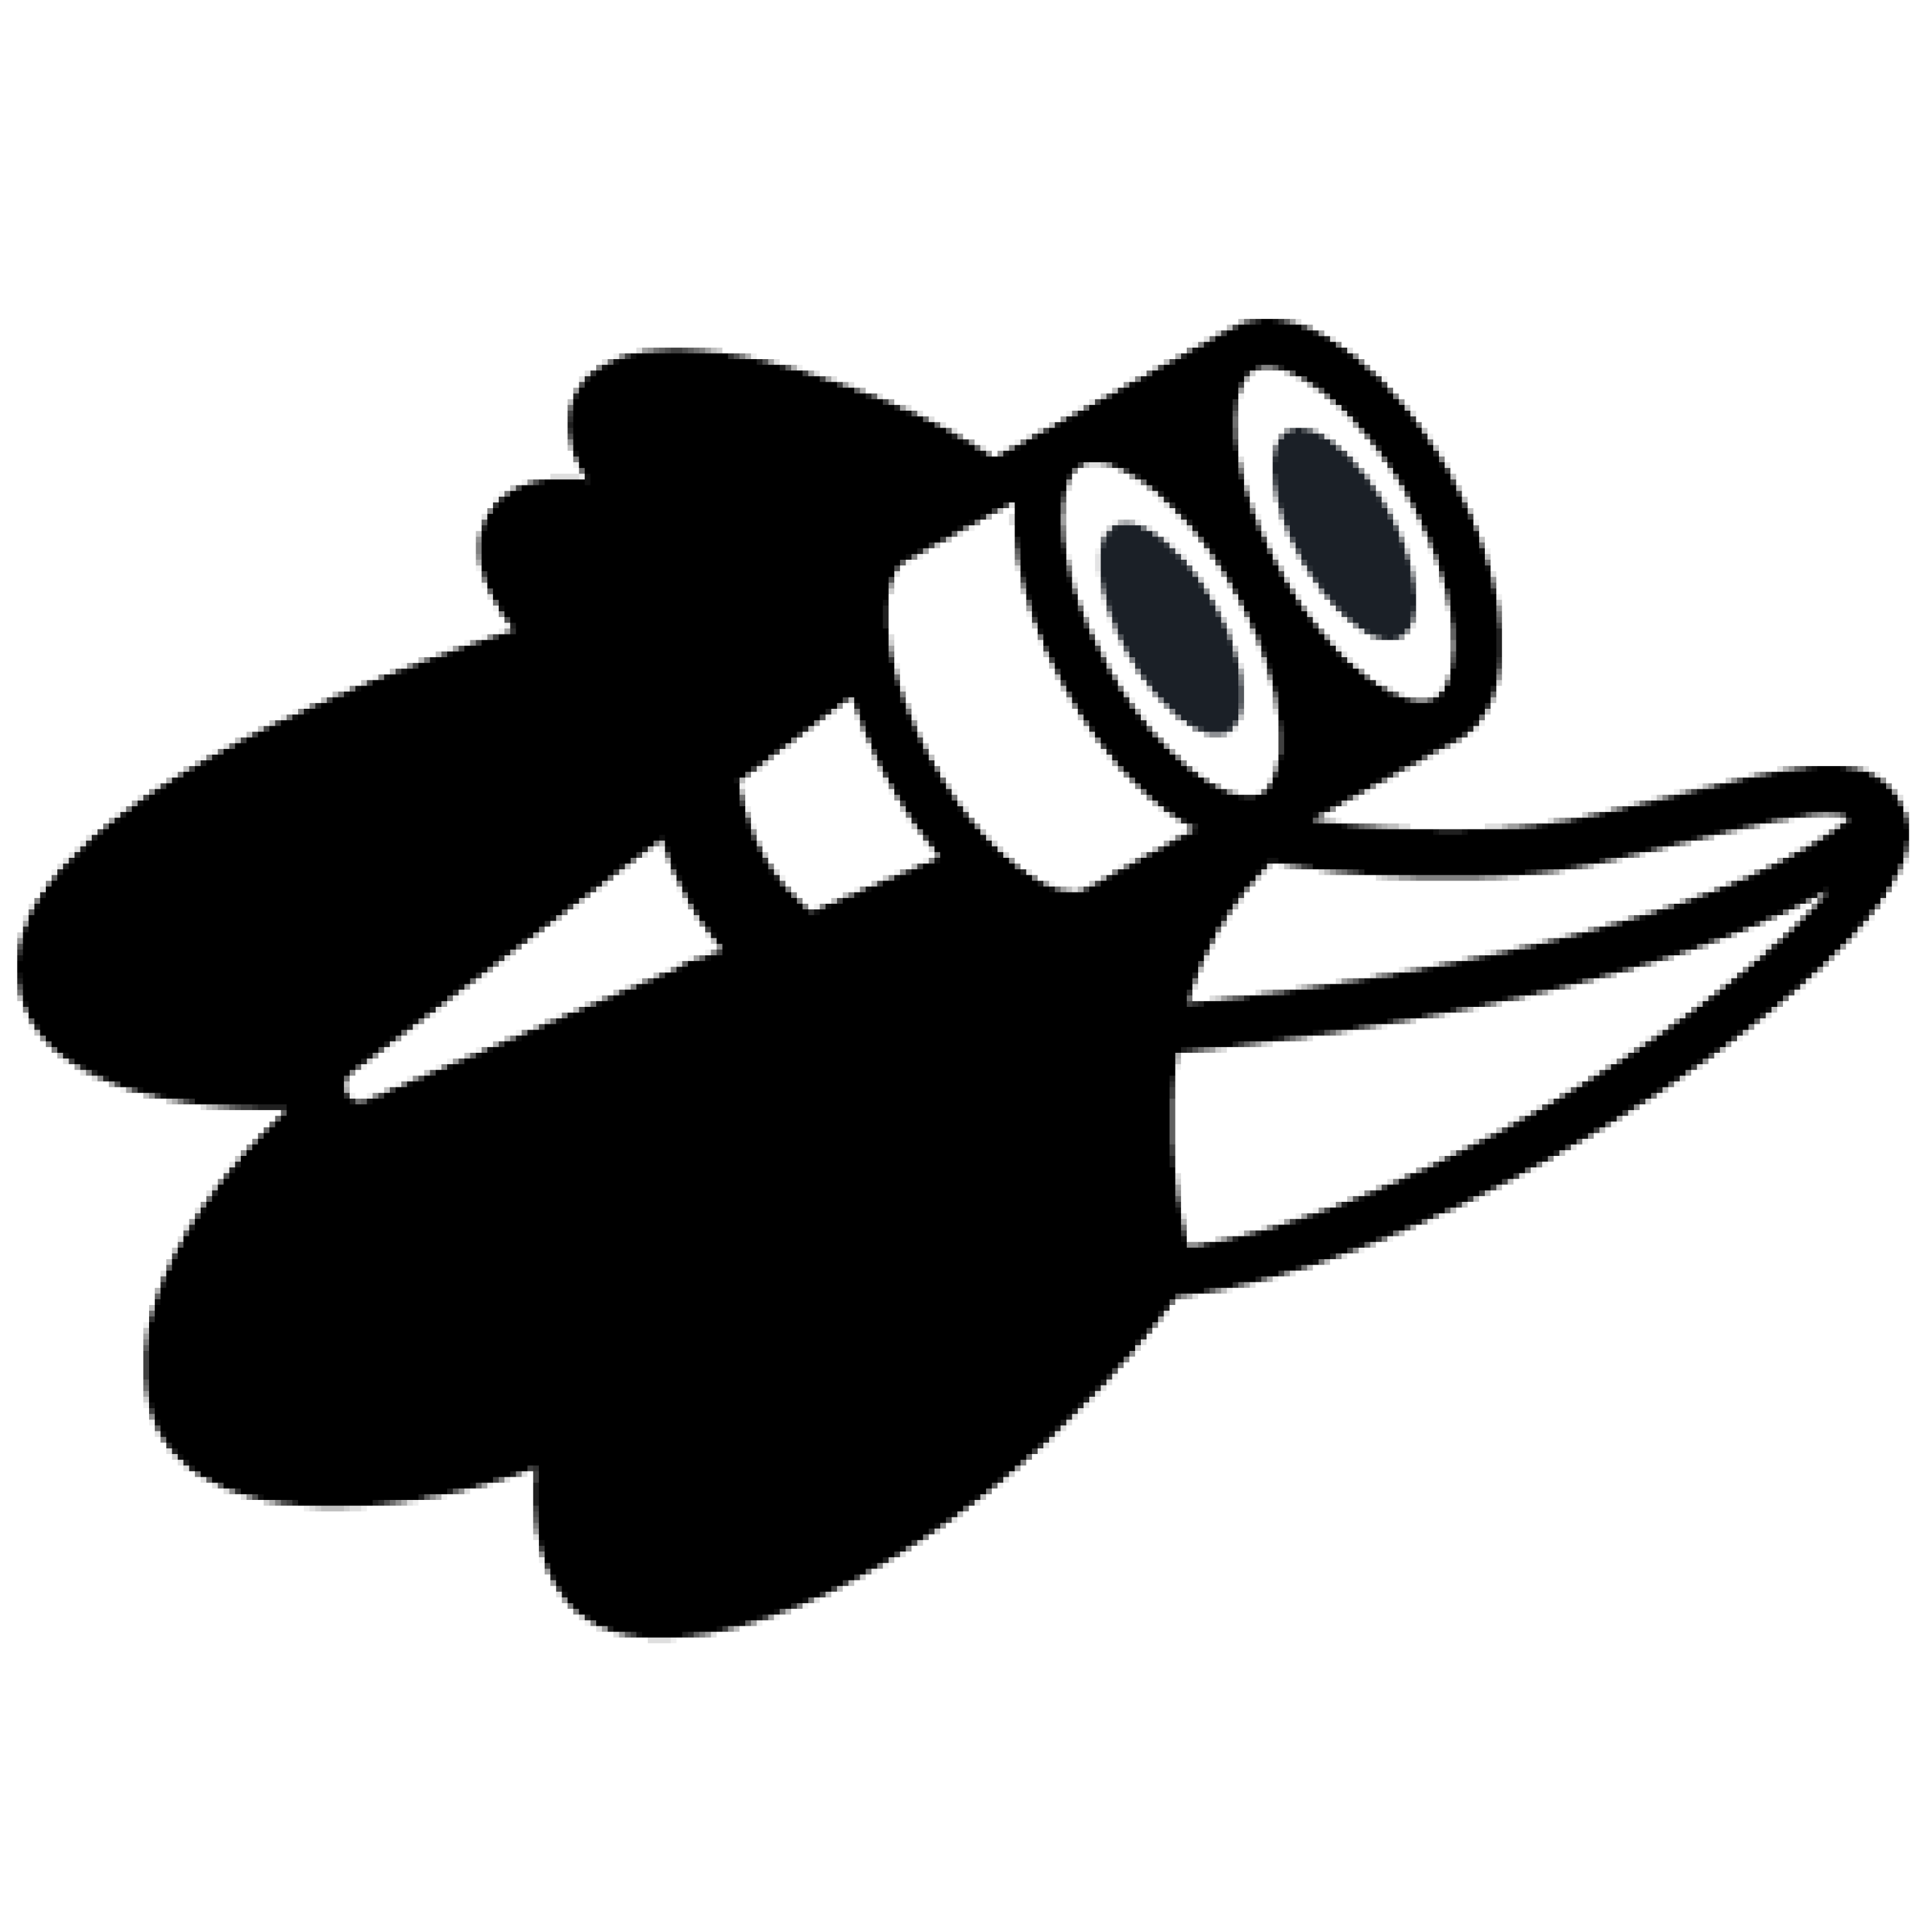 Distrobird logo